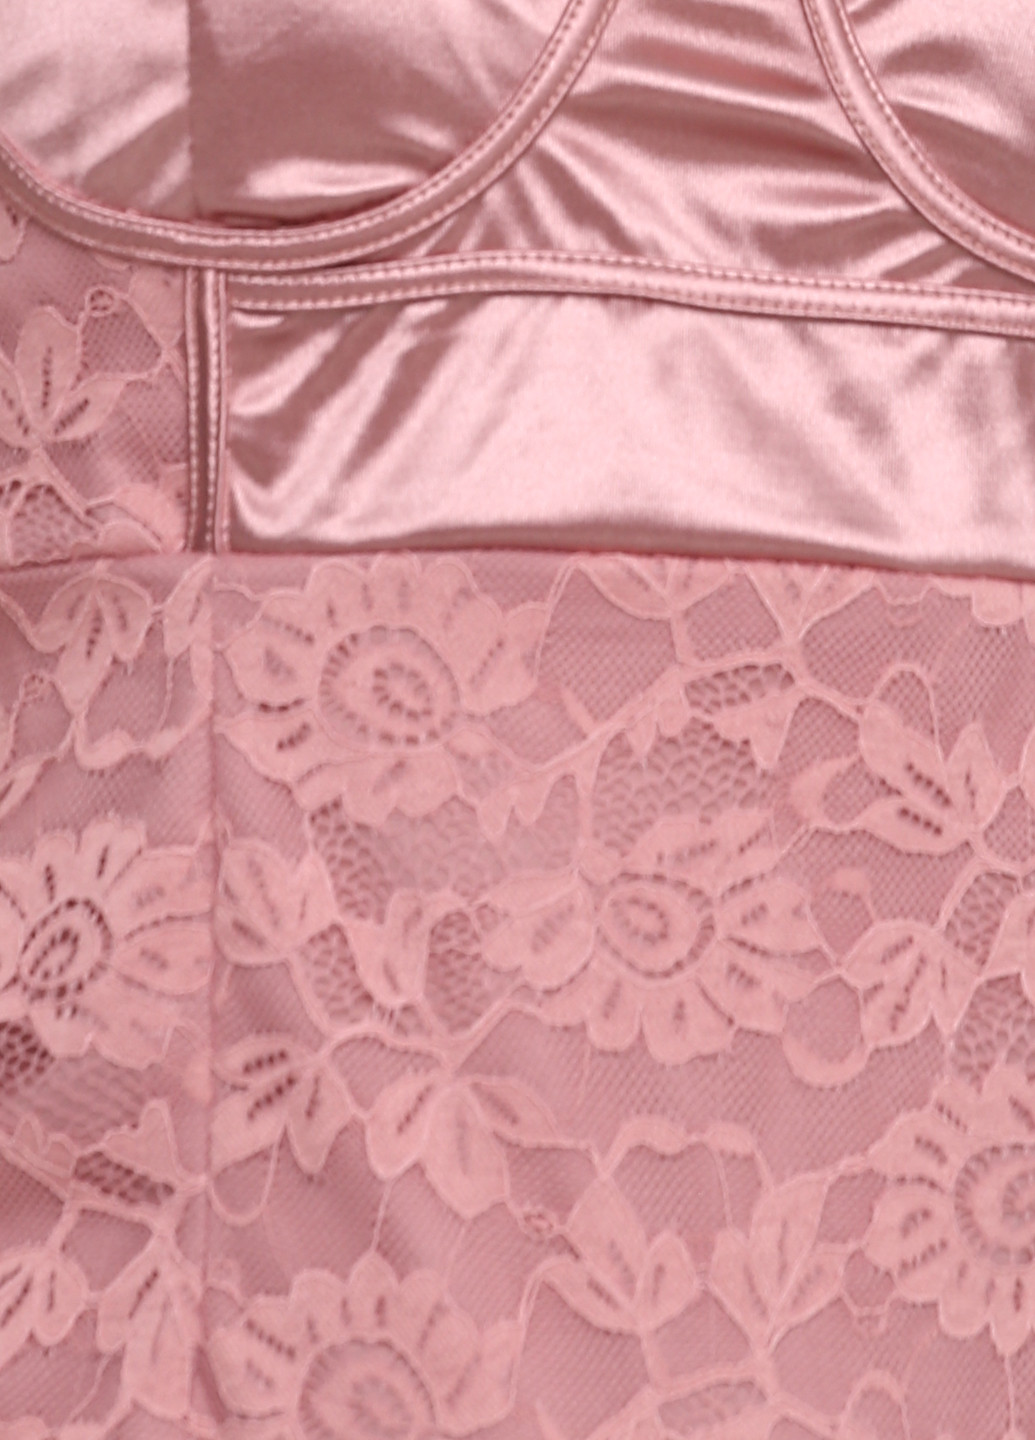 Розовое коктейльное платье PrettyLittleThing однотонное